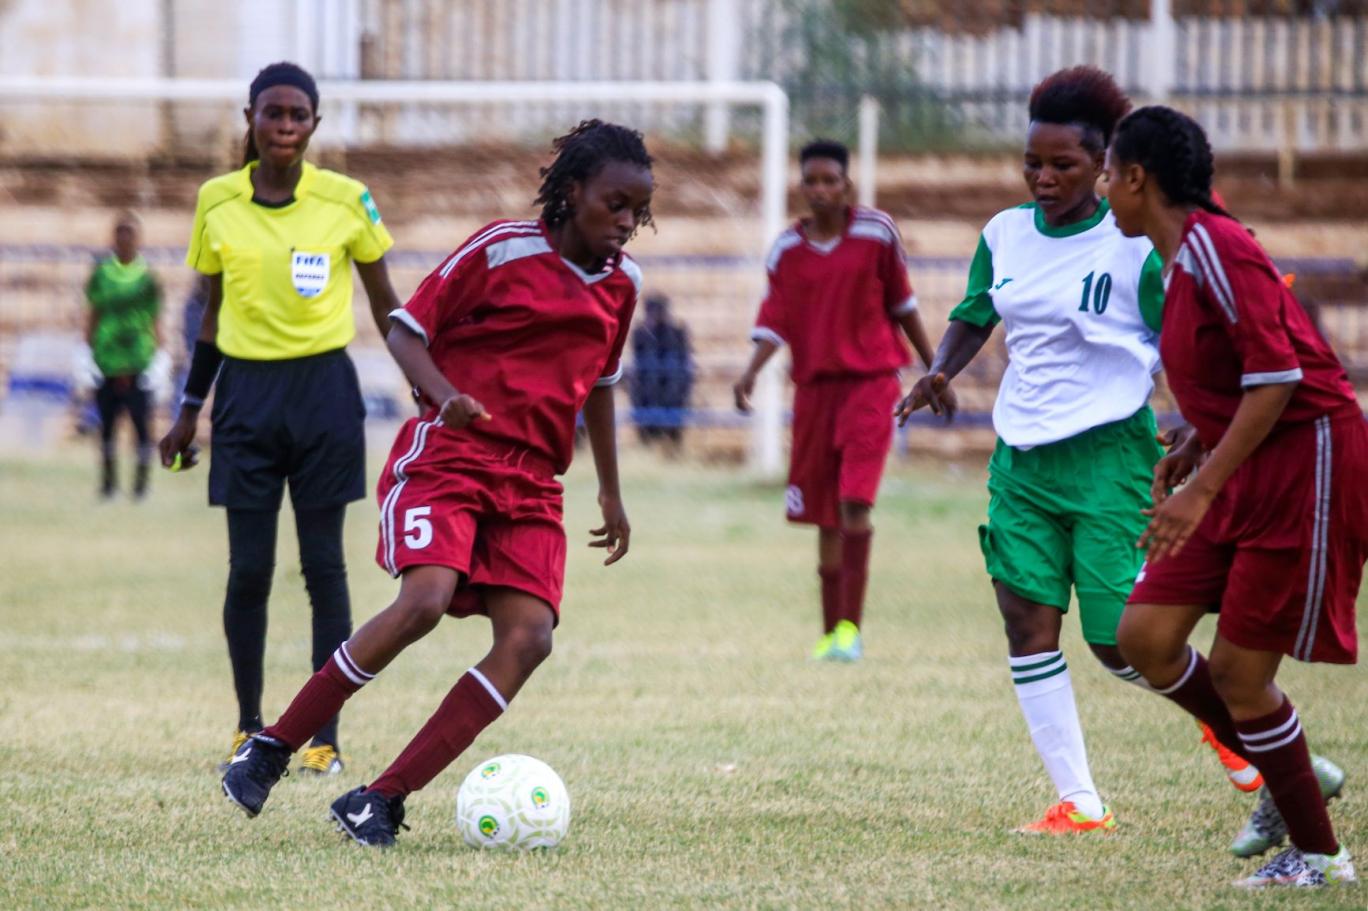 كرة القدم النسائية في السودان تستفز المتشددين دينيا اندبندنت عربية